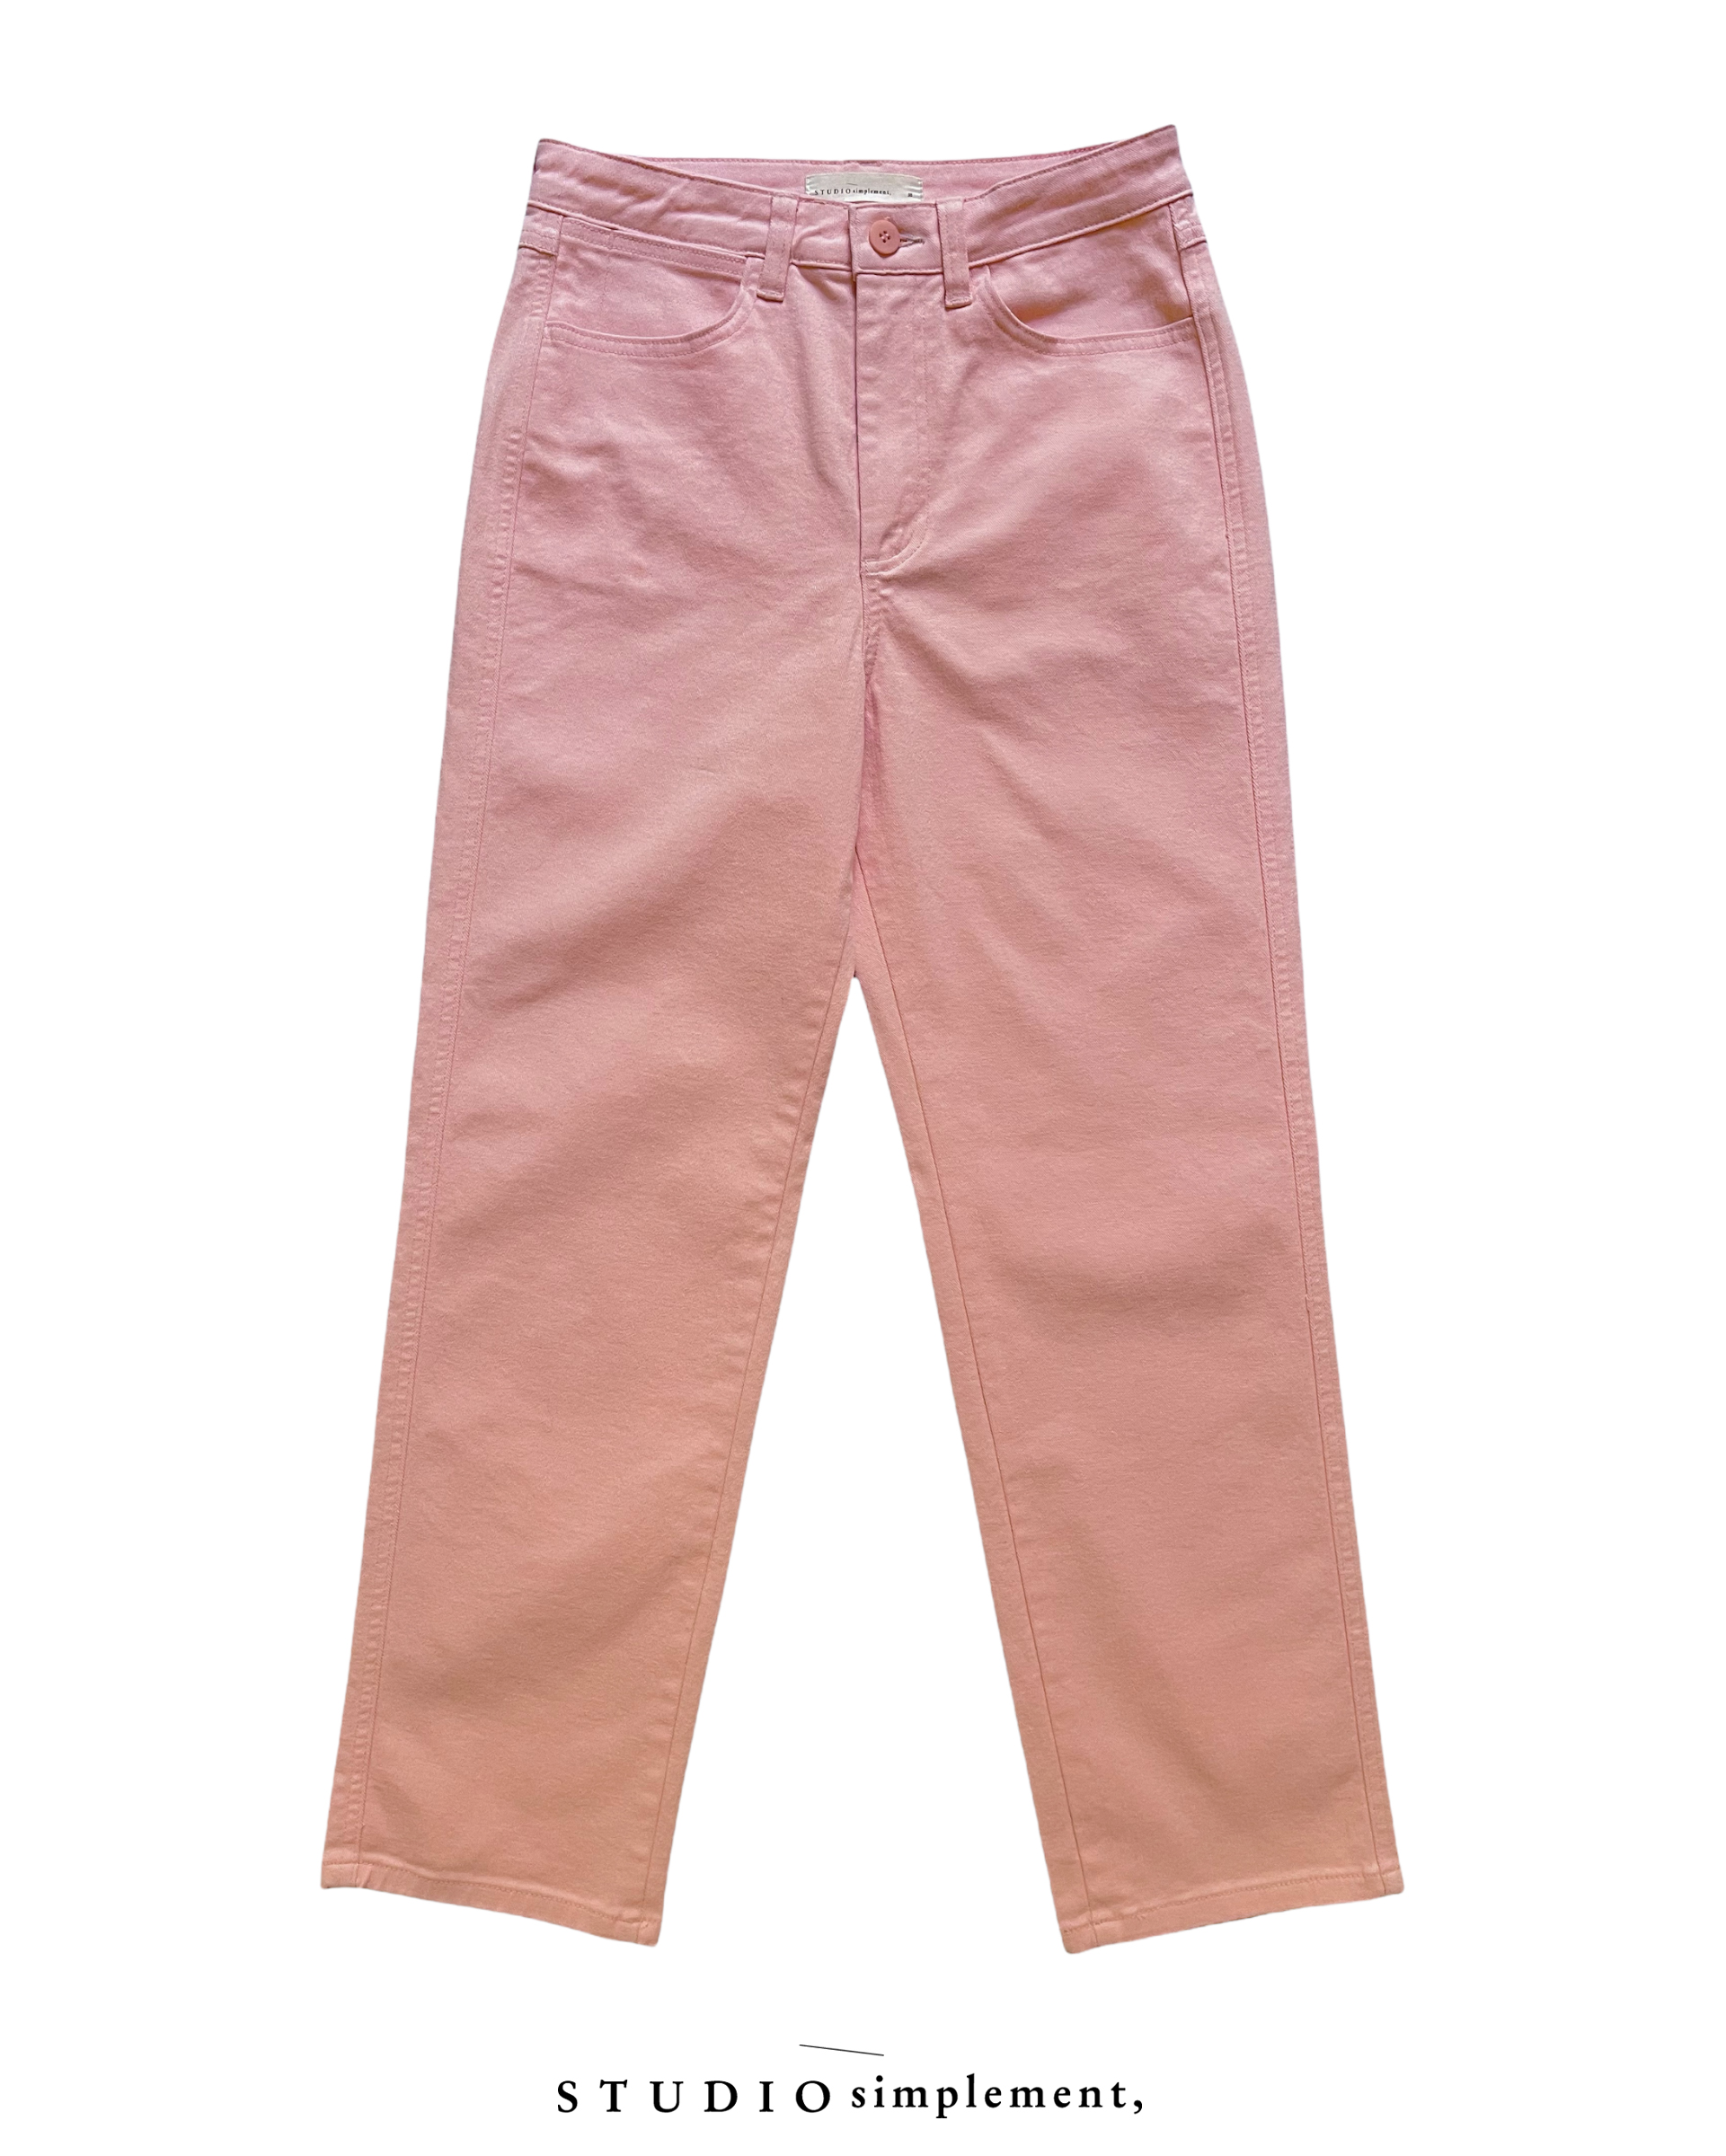 256 Kane Pants - pink